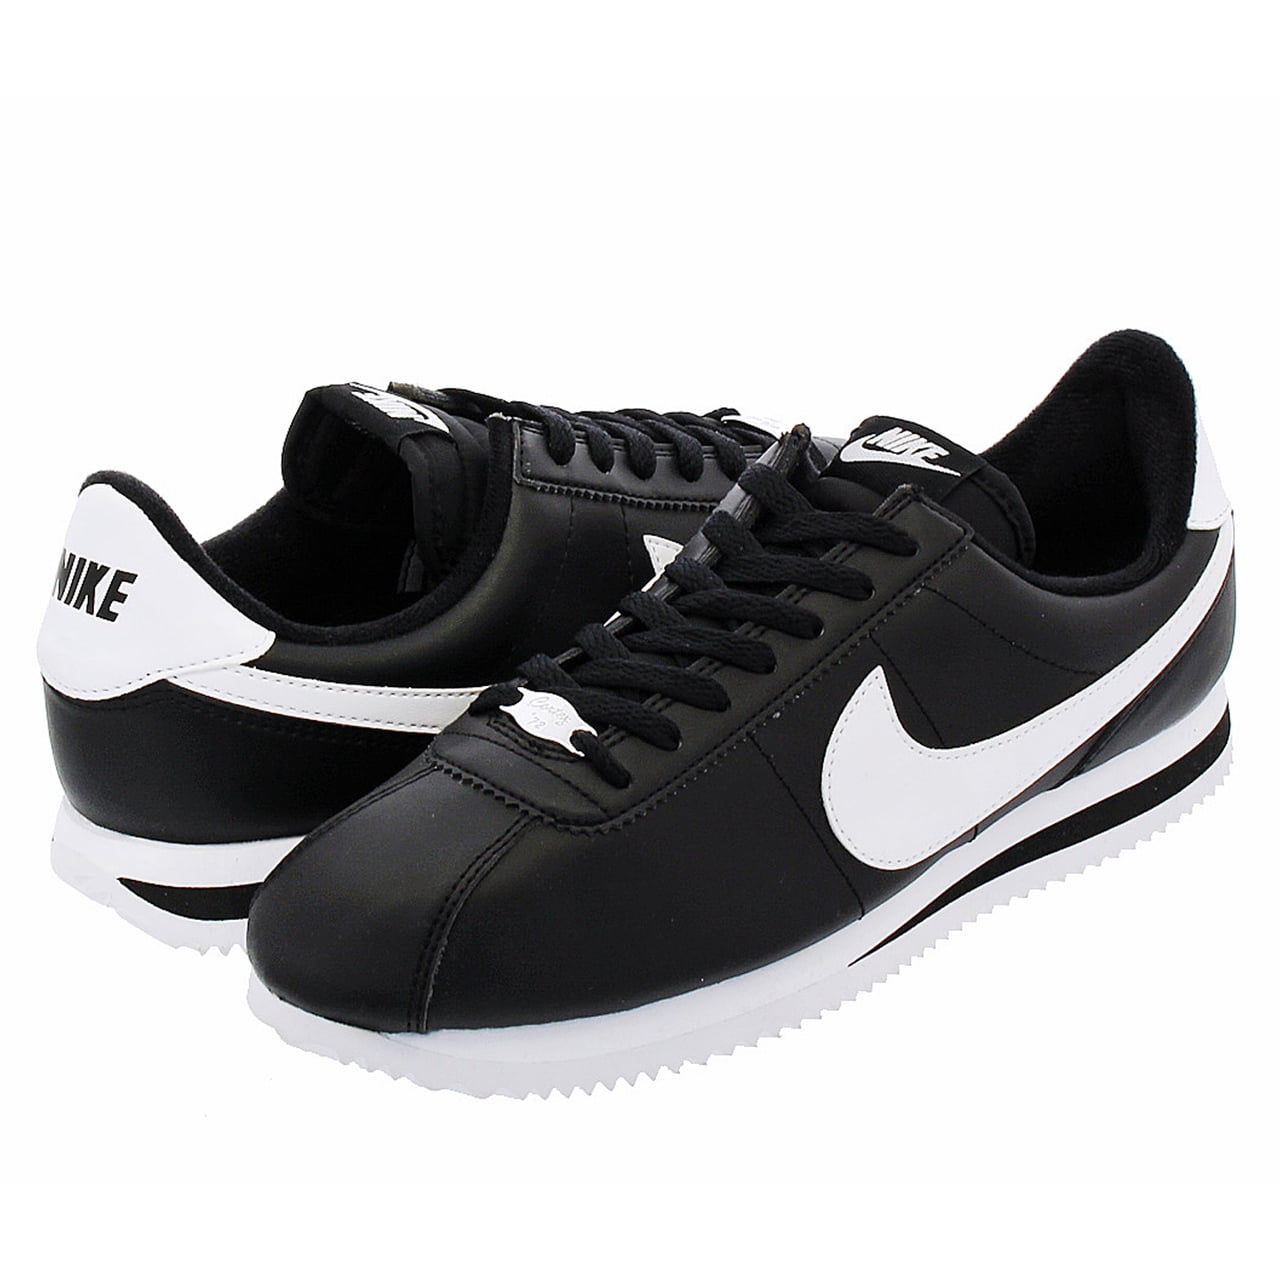 Nike Cortez Basic Leather Black/White Men's Classic Shoes Authentic 819719 Men - Walmart.com